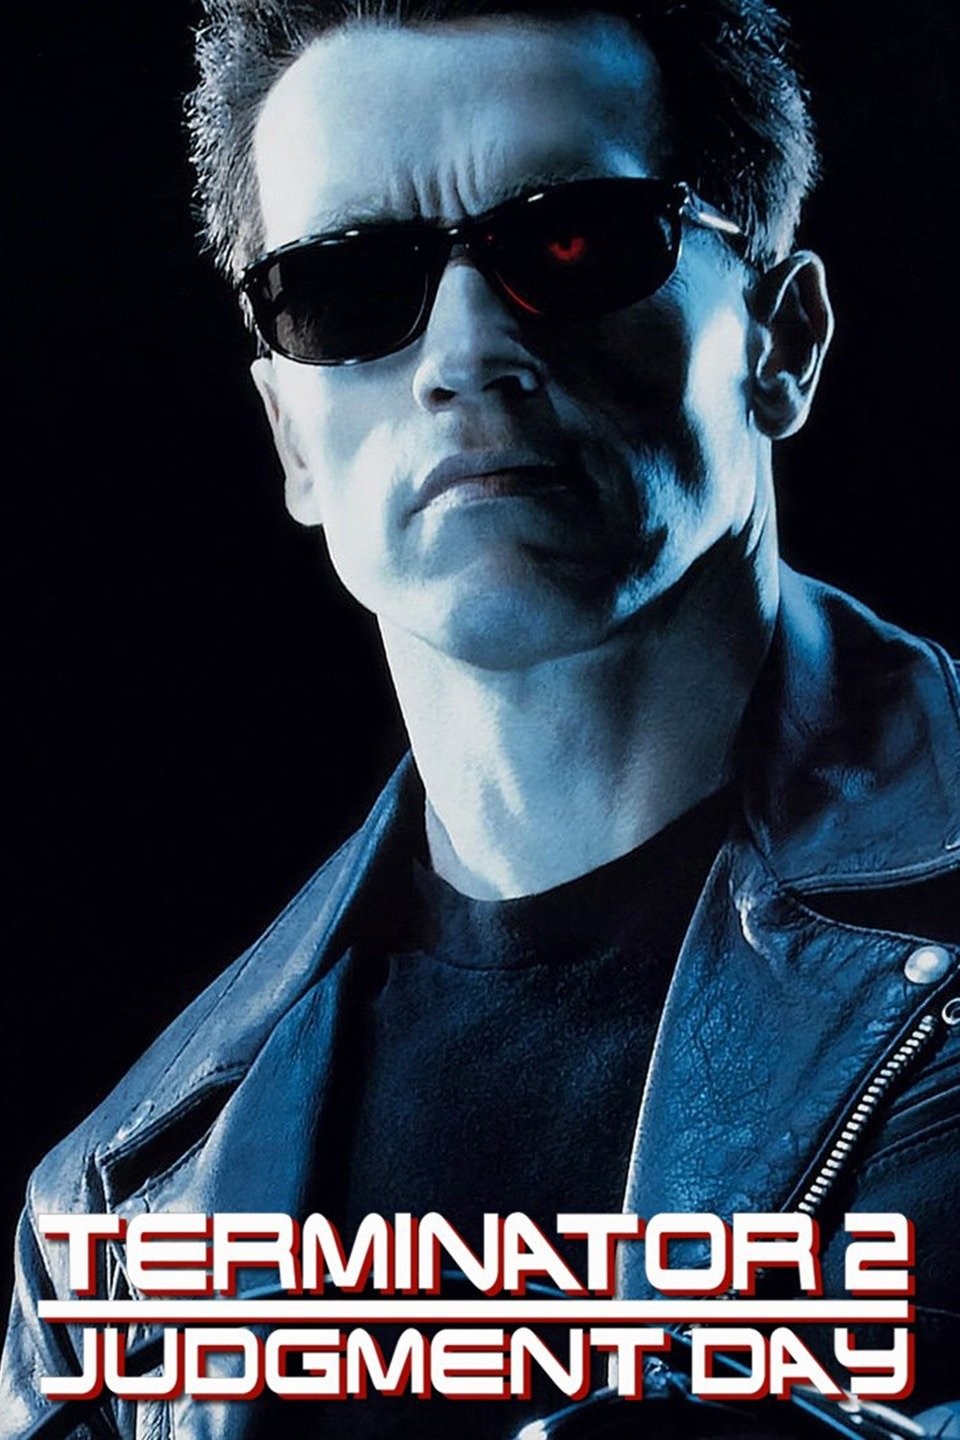 T2 3D props : r/Terminator